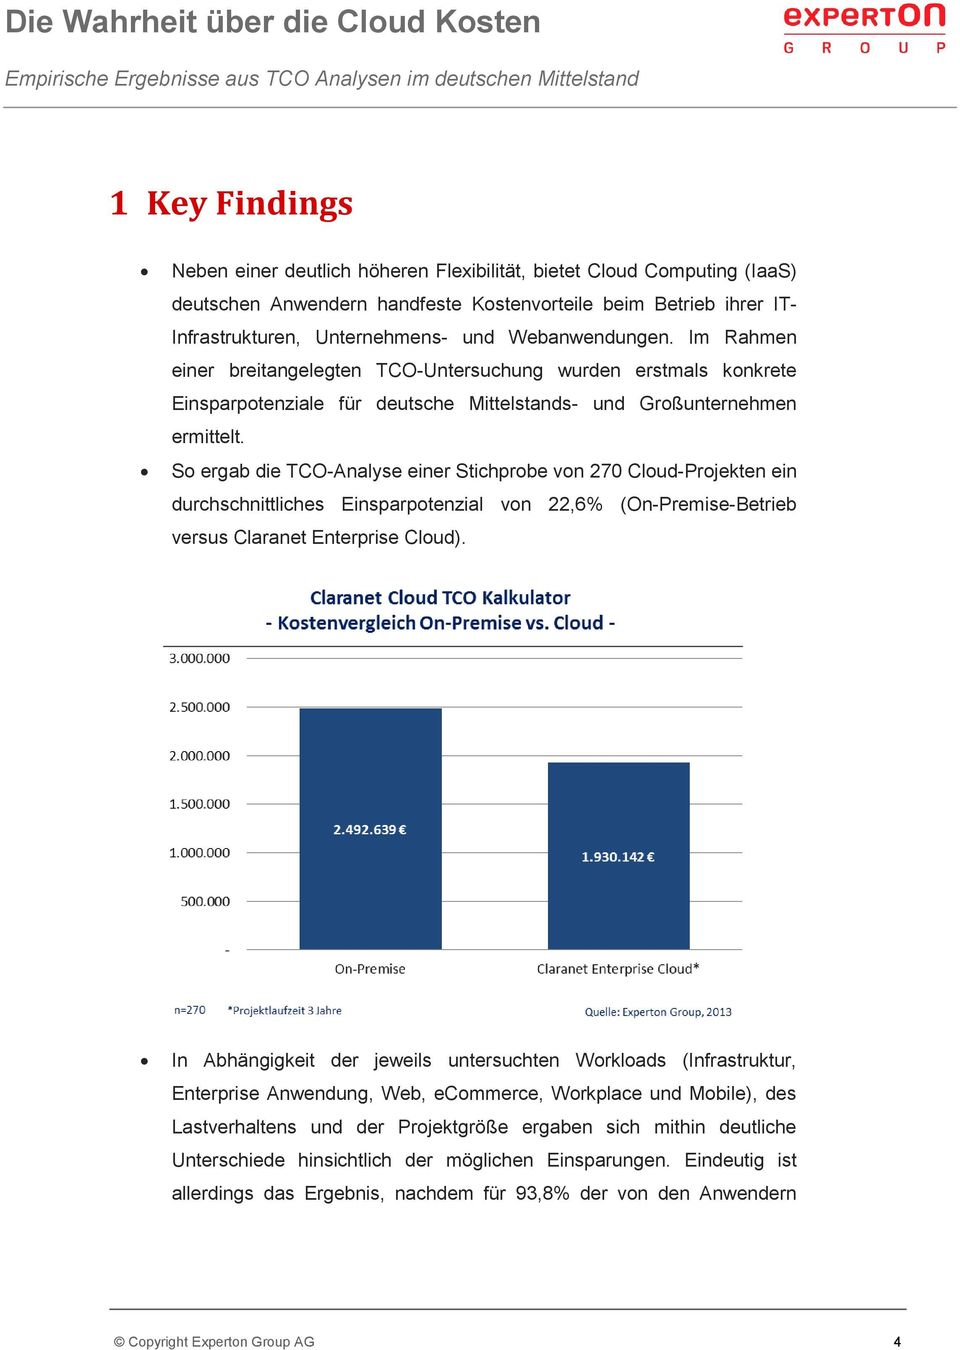 So ergab die TCO-Analyse einer Stichprobe von 270 Cloud-Projekten ein durchschnittliches Einsparpotenzial von 22,6% (On-Premise-Betrieb versus Claranet Enterprise Cloud).